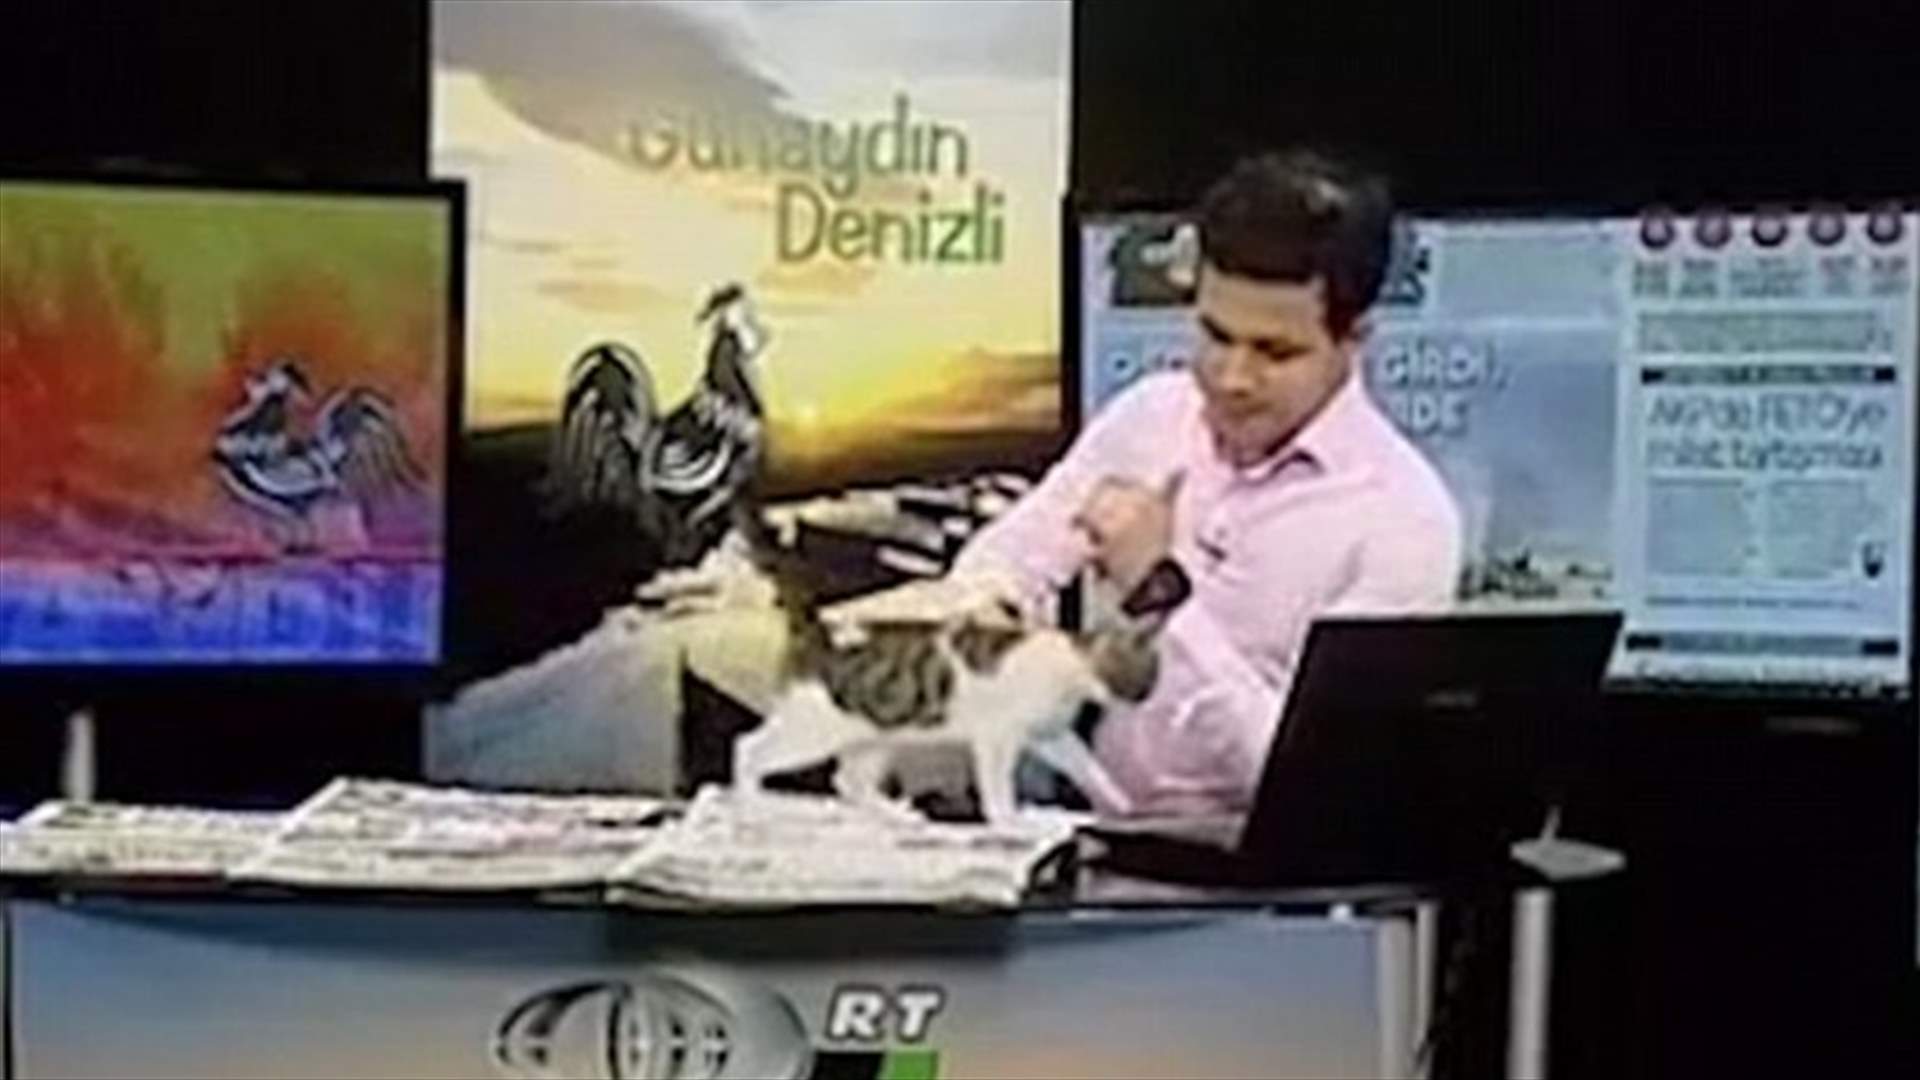 بالفيديو: قطّة تقتحم البرنامج الصباحيّ وتفاجئ المشاهدين!